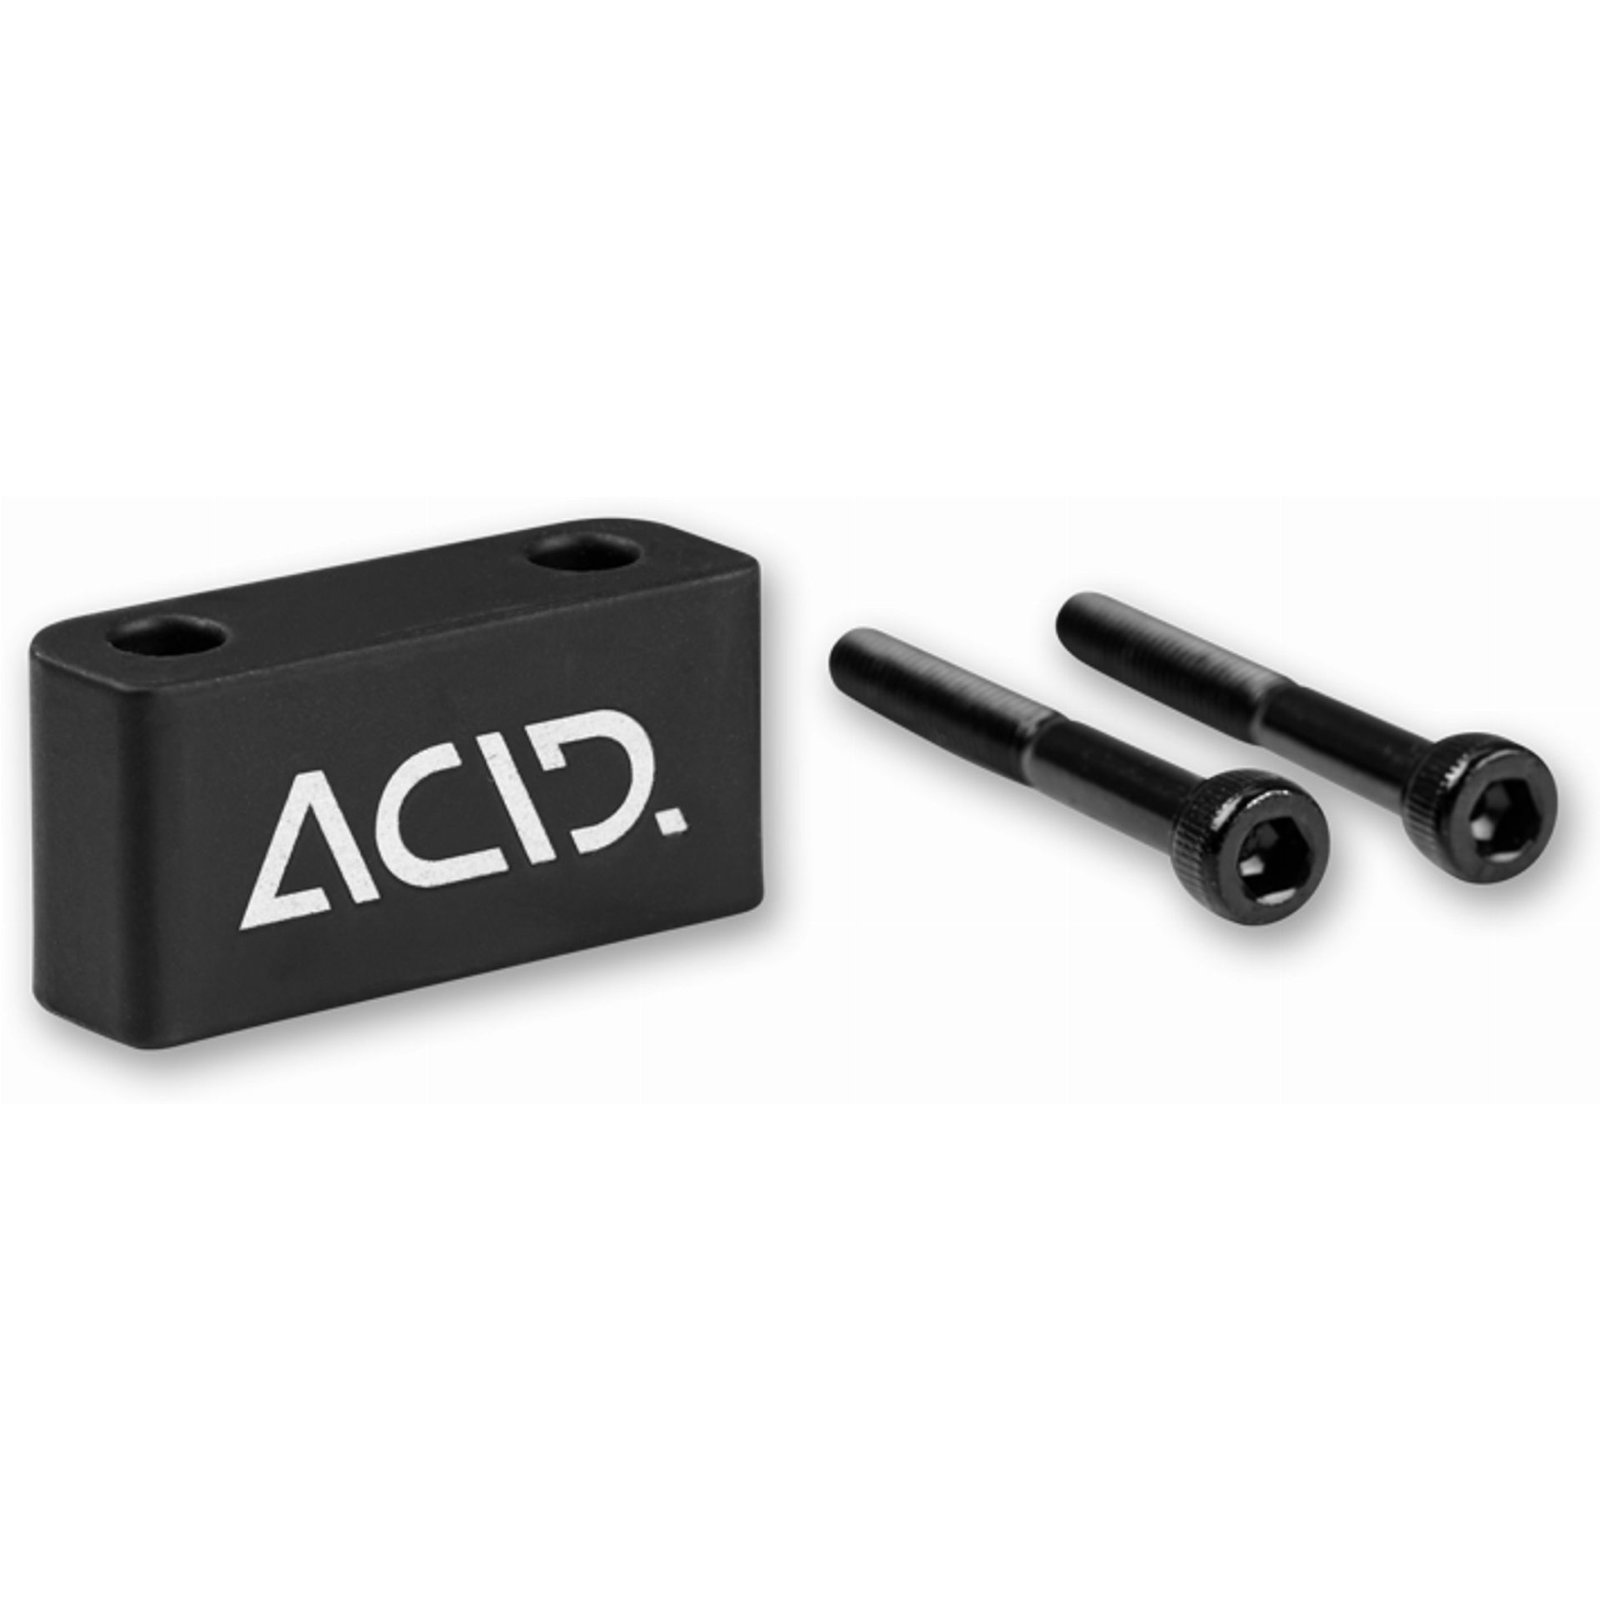 Acid Abstandshalter für Fahrradständer FM black 38,62 mm * 20 mm * 12,68 mm